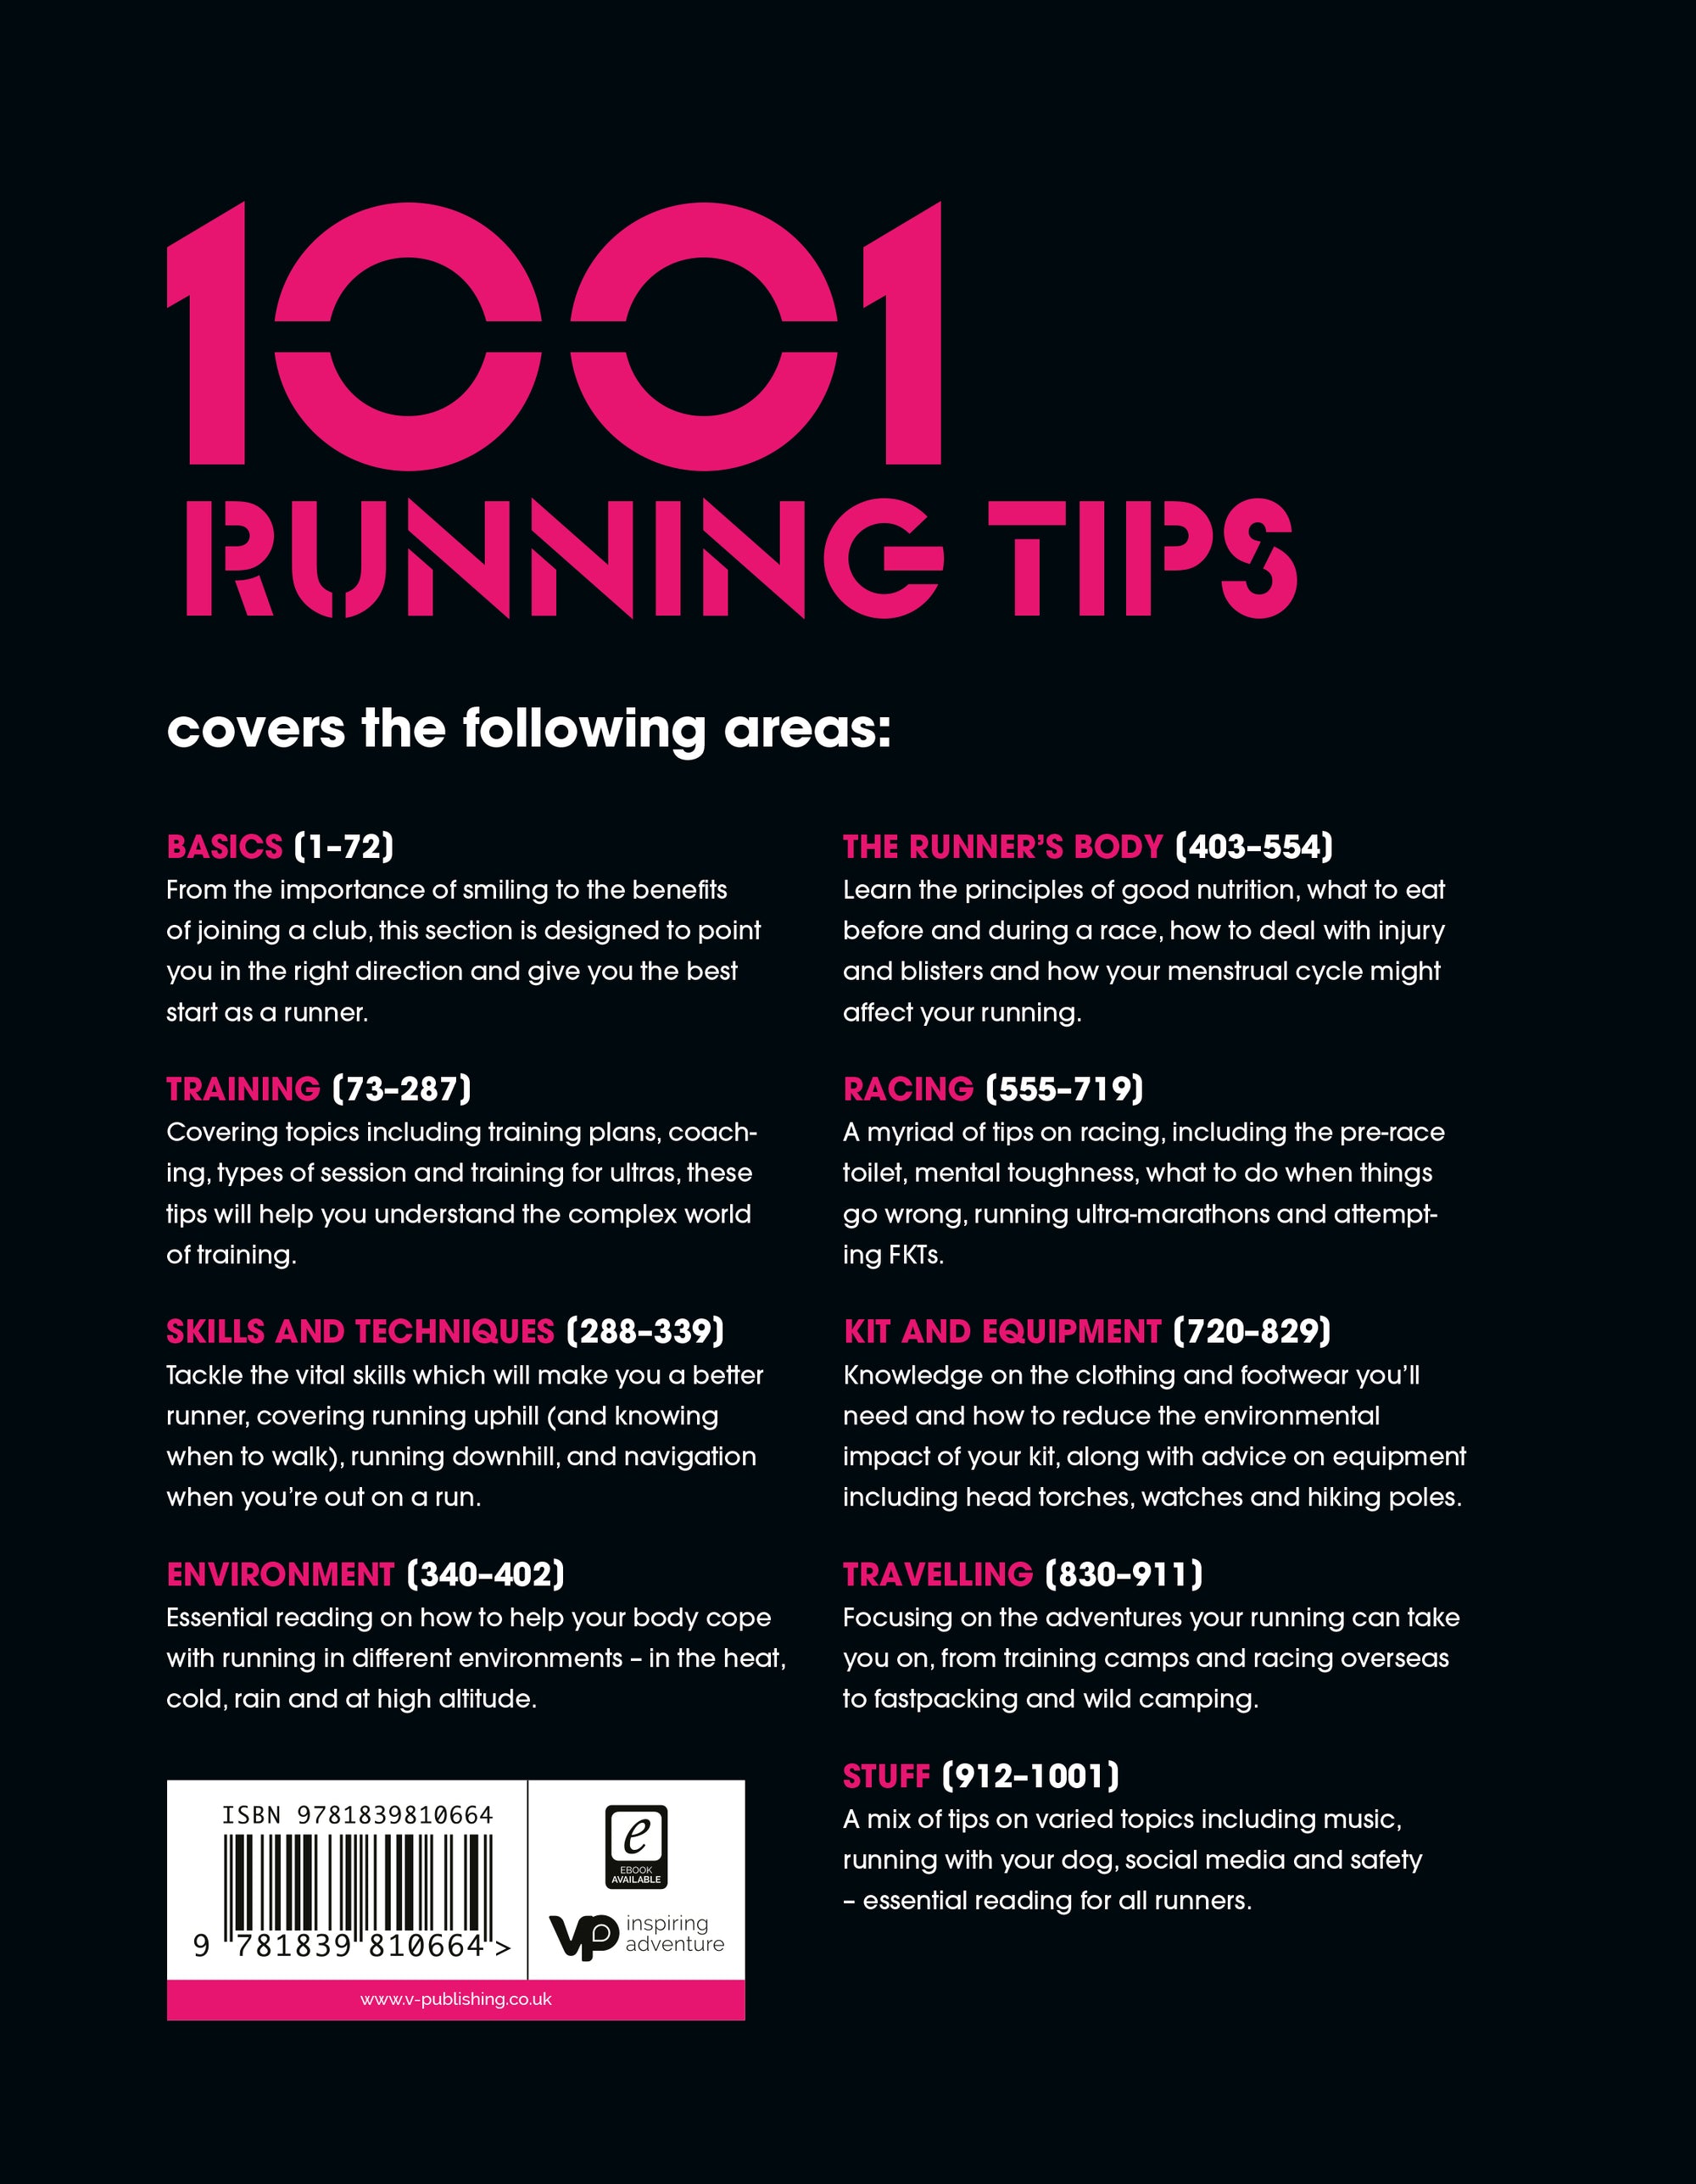 1001 Running Tips by Robbie Britton